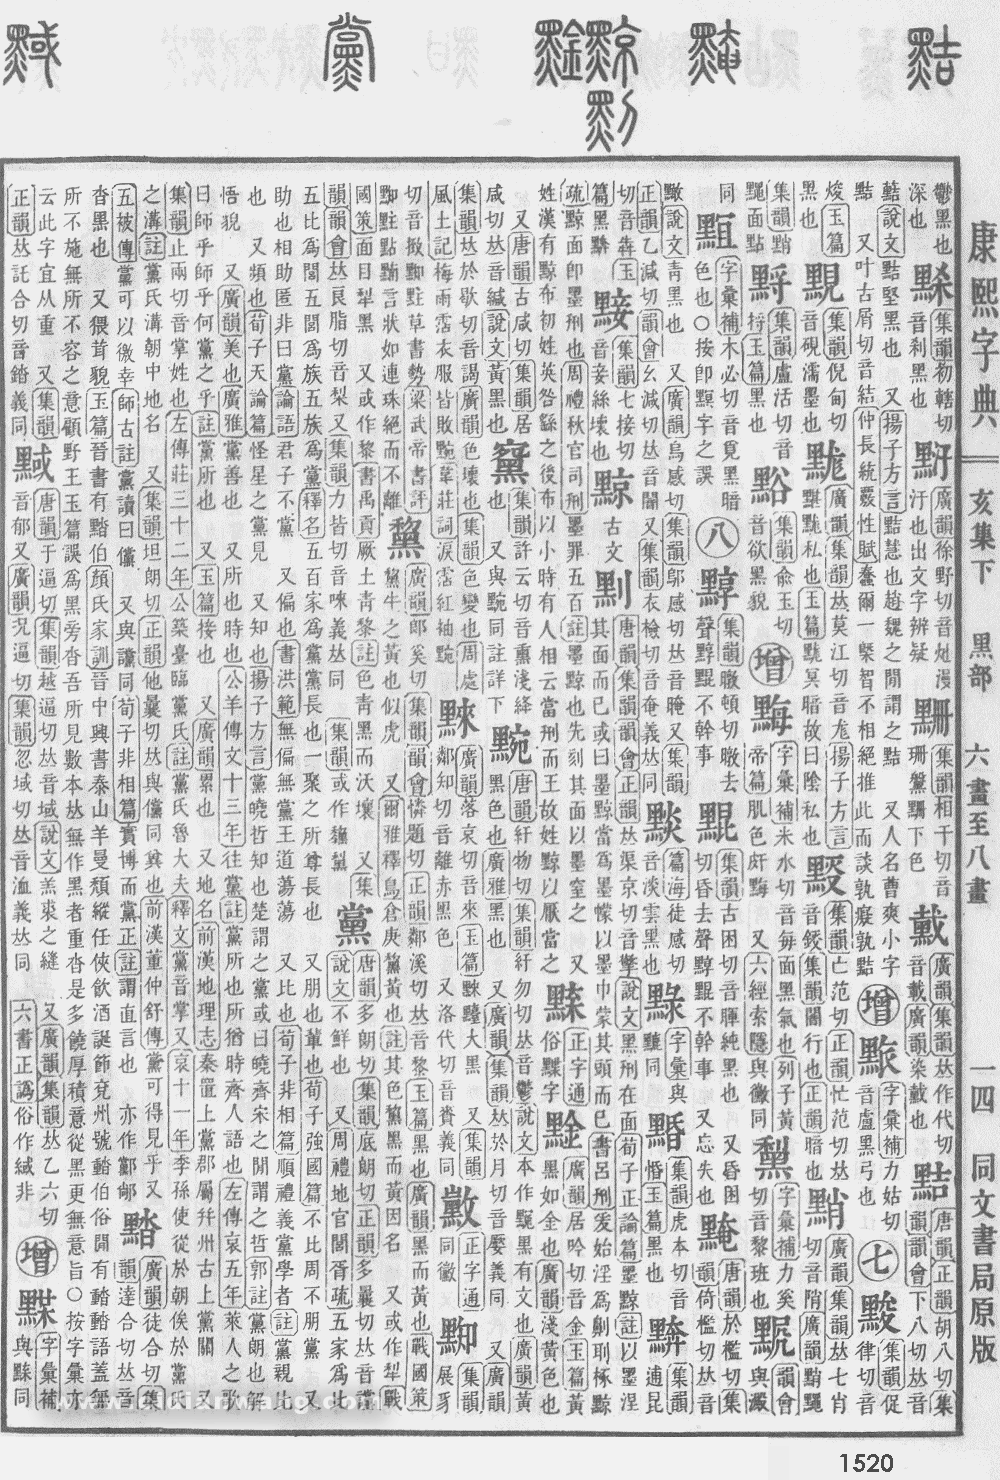 康熙字典掃描版第1520頁